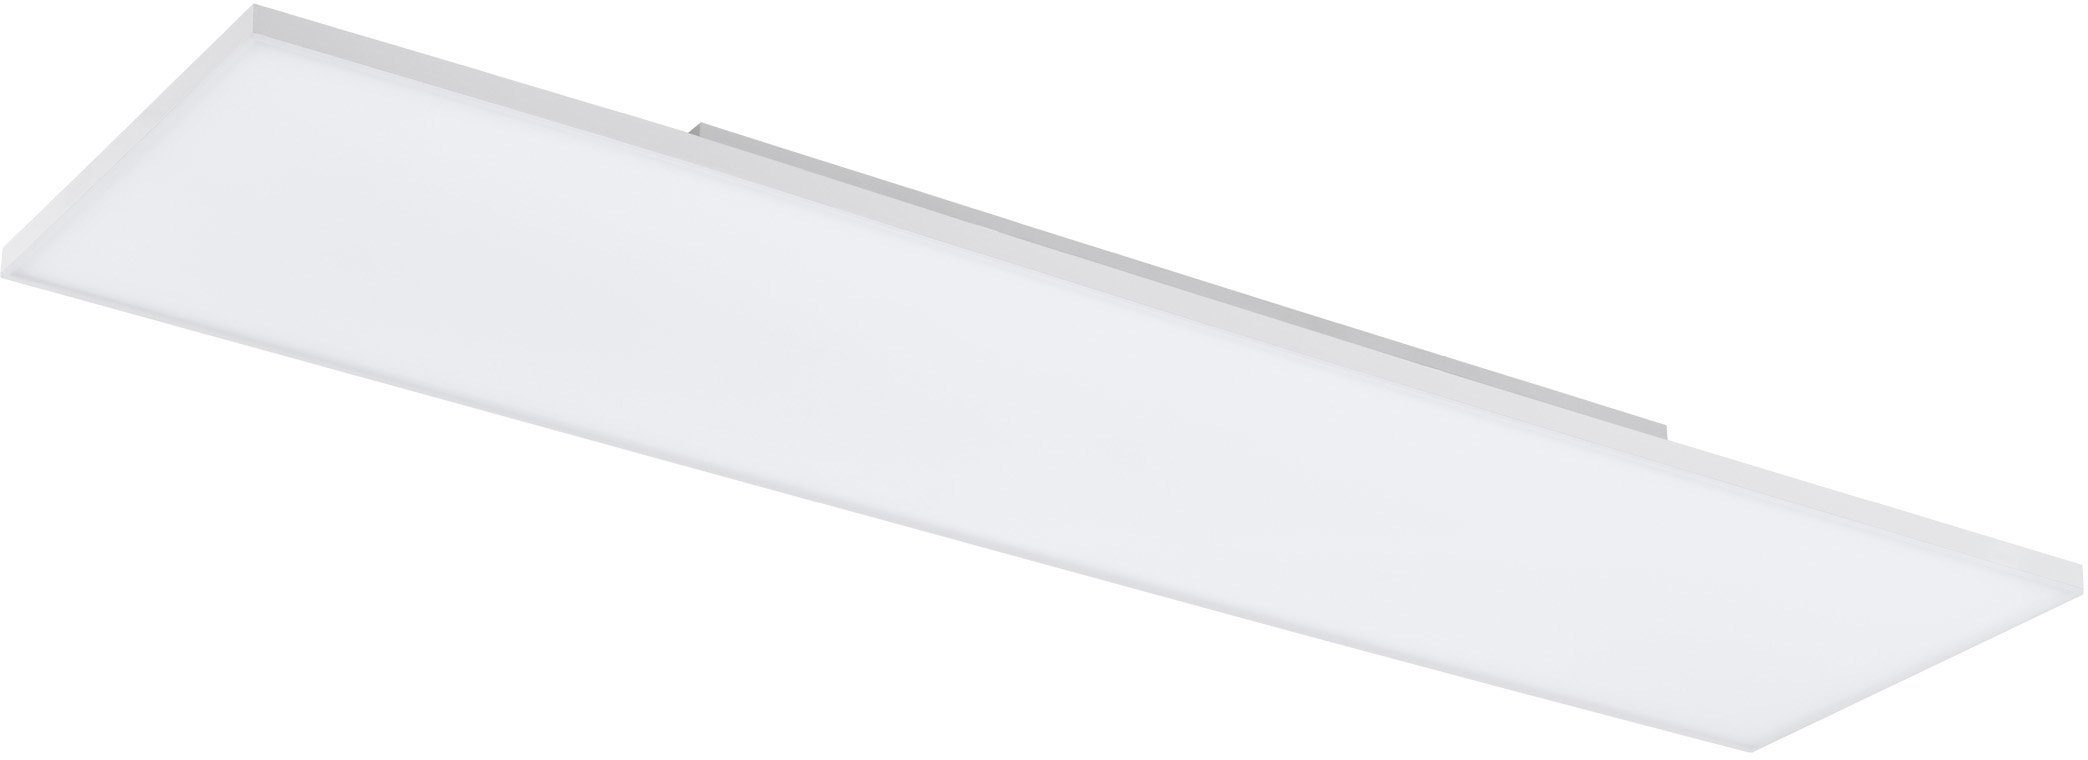 EGLO LED Panel TURCONA, Warmweiß, Ein LED im ist Schweberahmen fest flaches Lieferumfang integriert, Design, rahmenlos